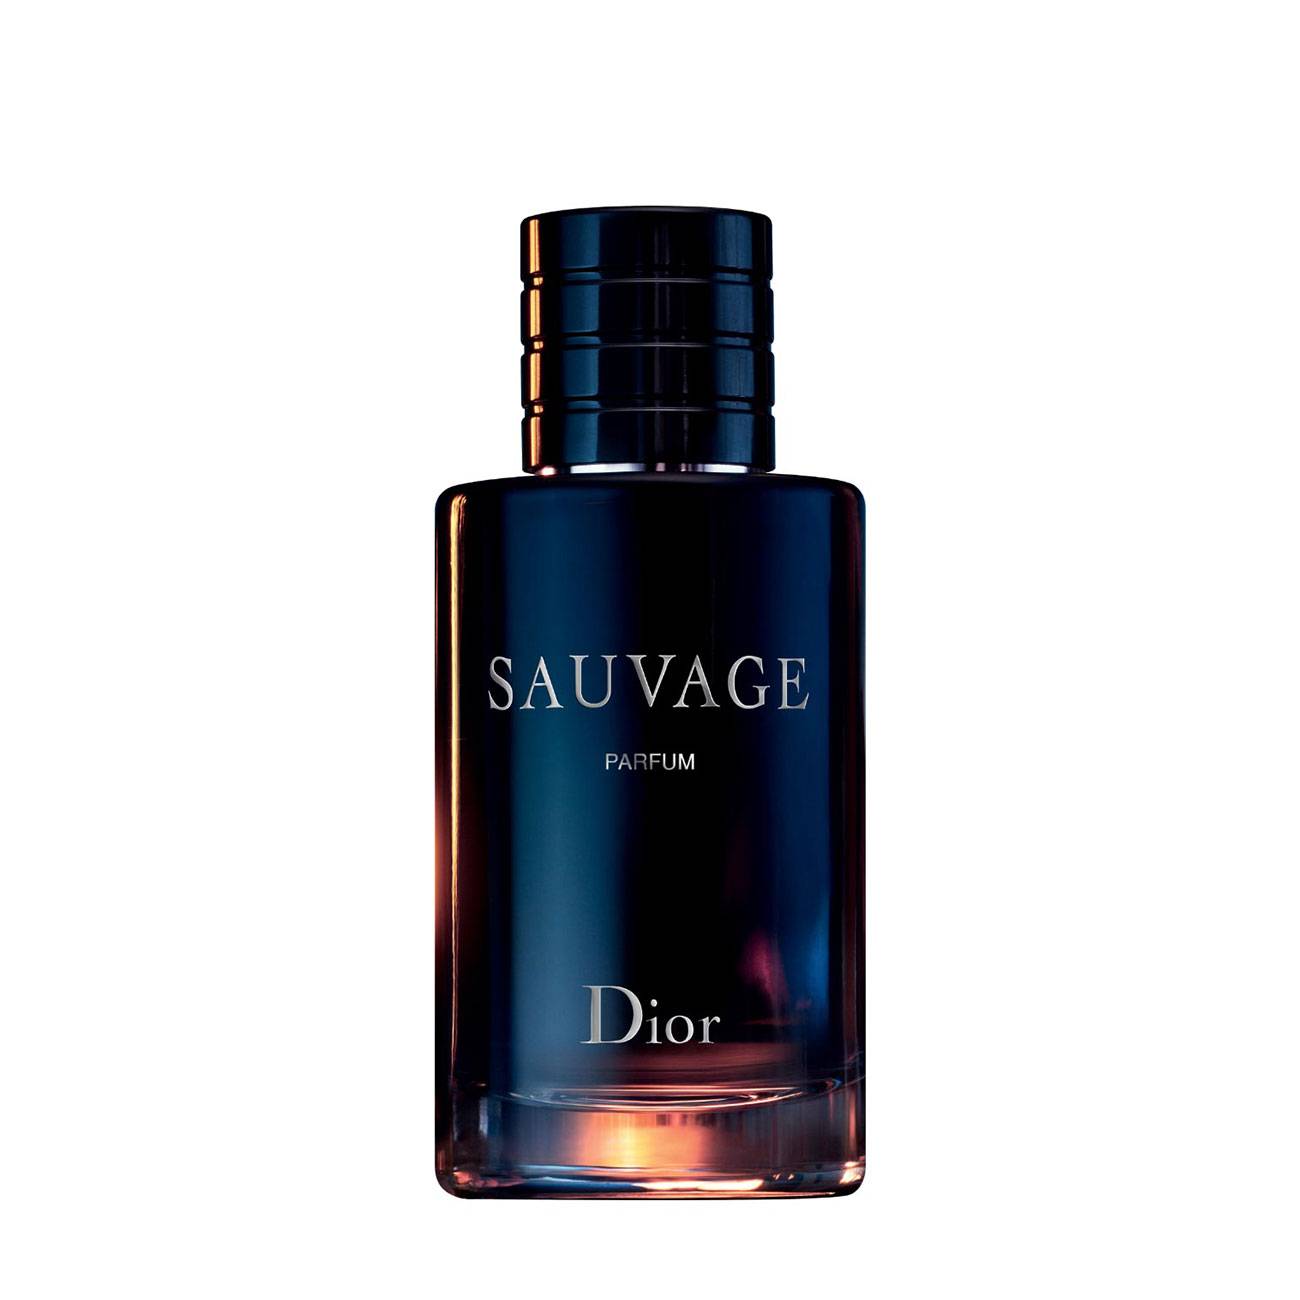 Apa de Parfum Dior SAUVAGE PARFUM 100ml cu comanda online